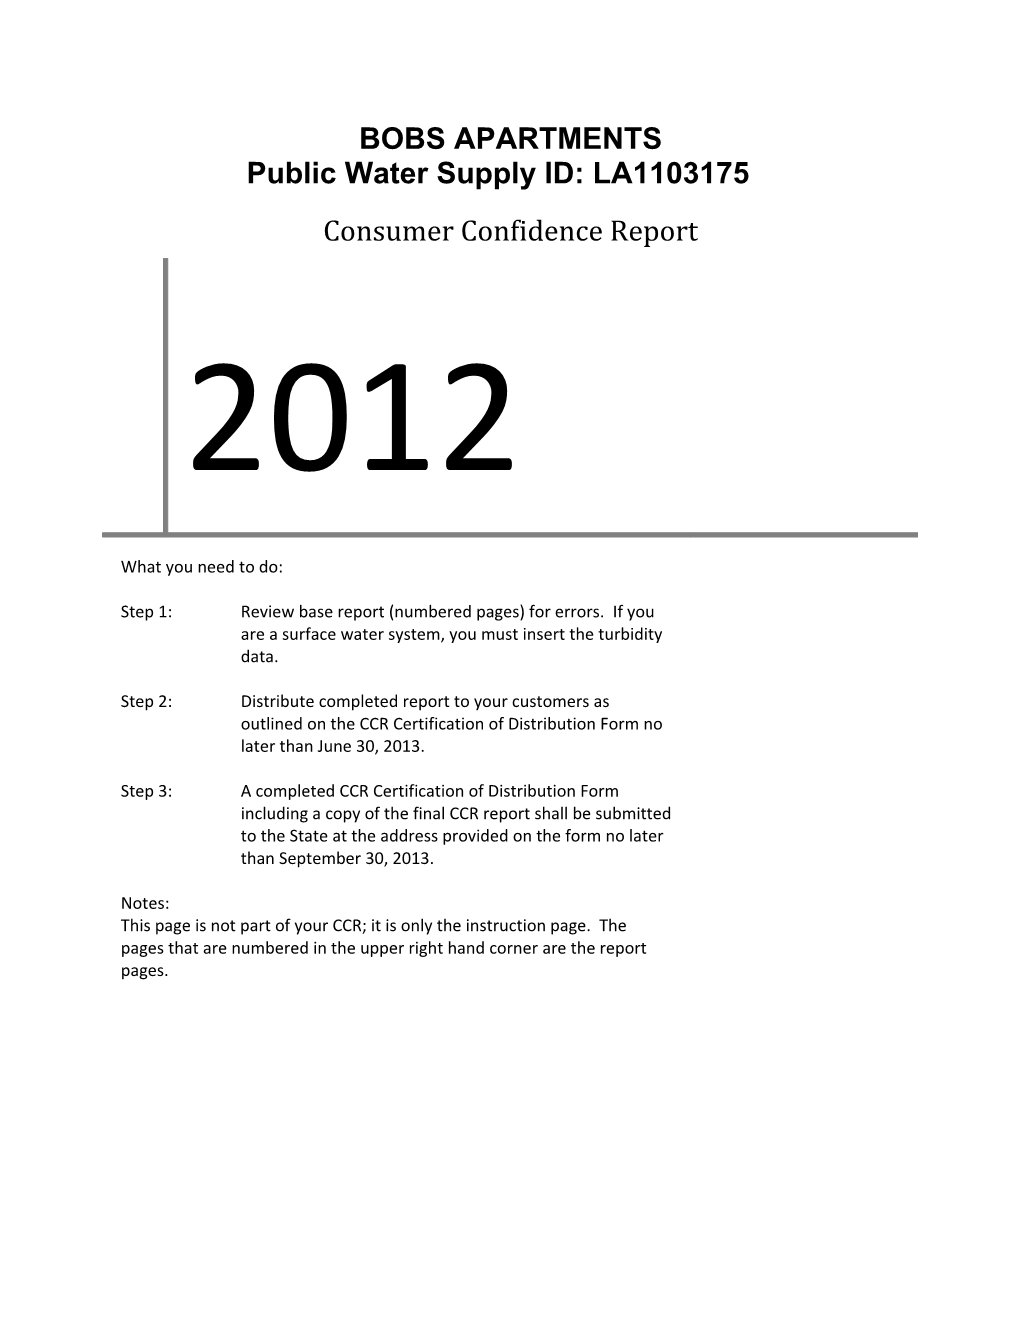 Public Water Supply ID: LA1103175